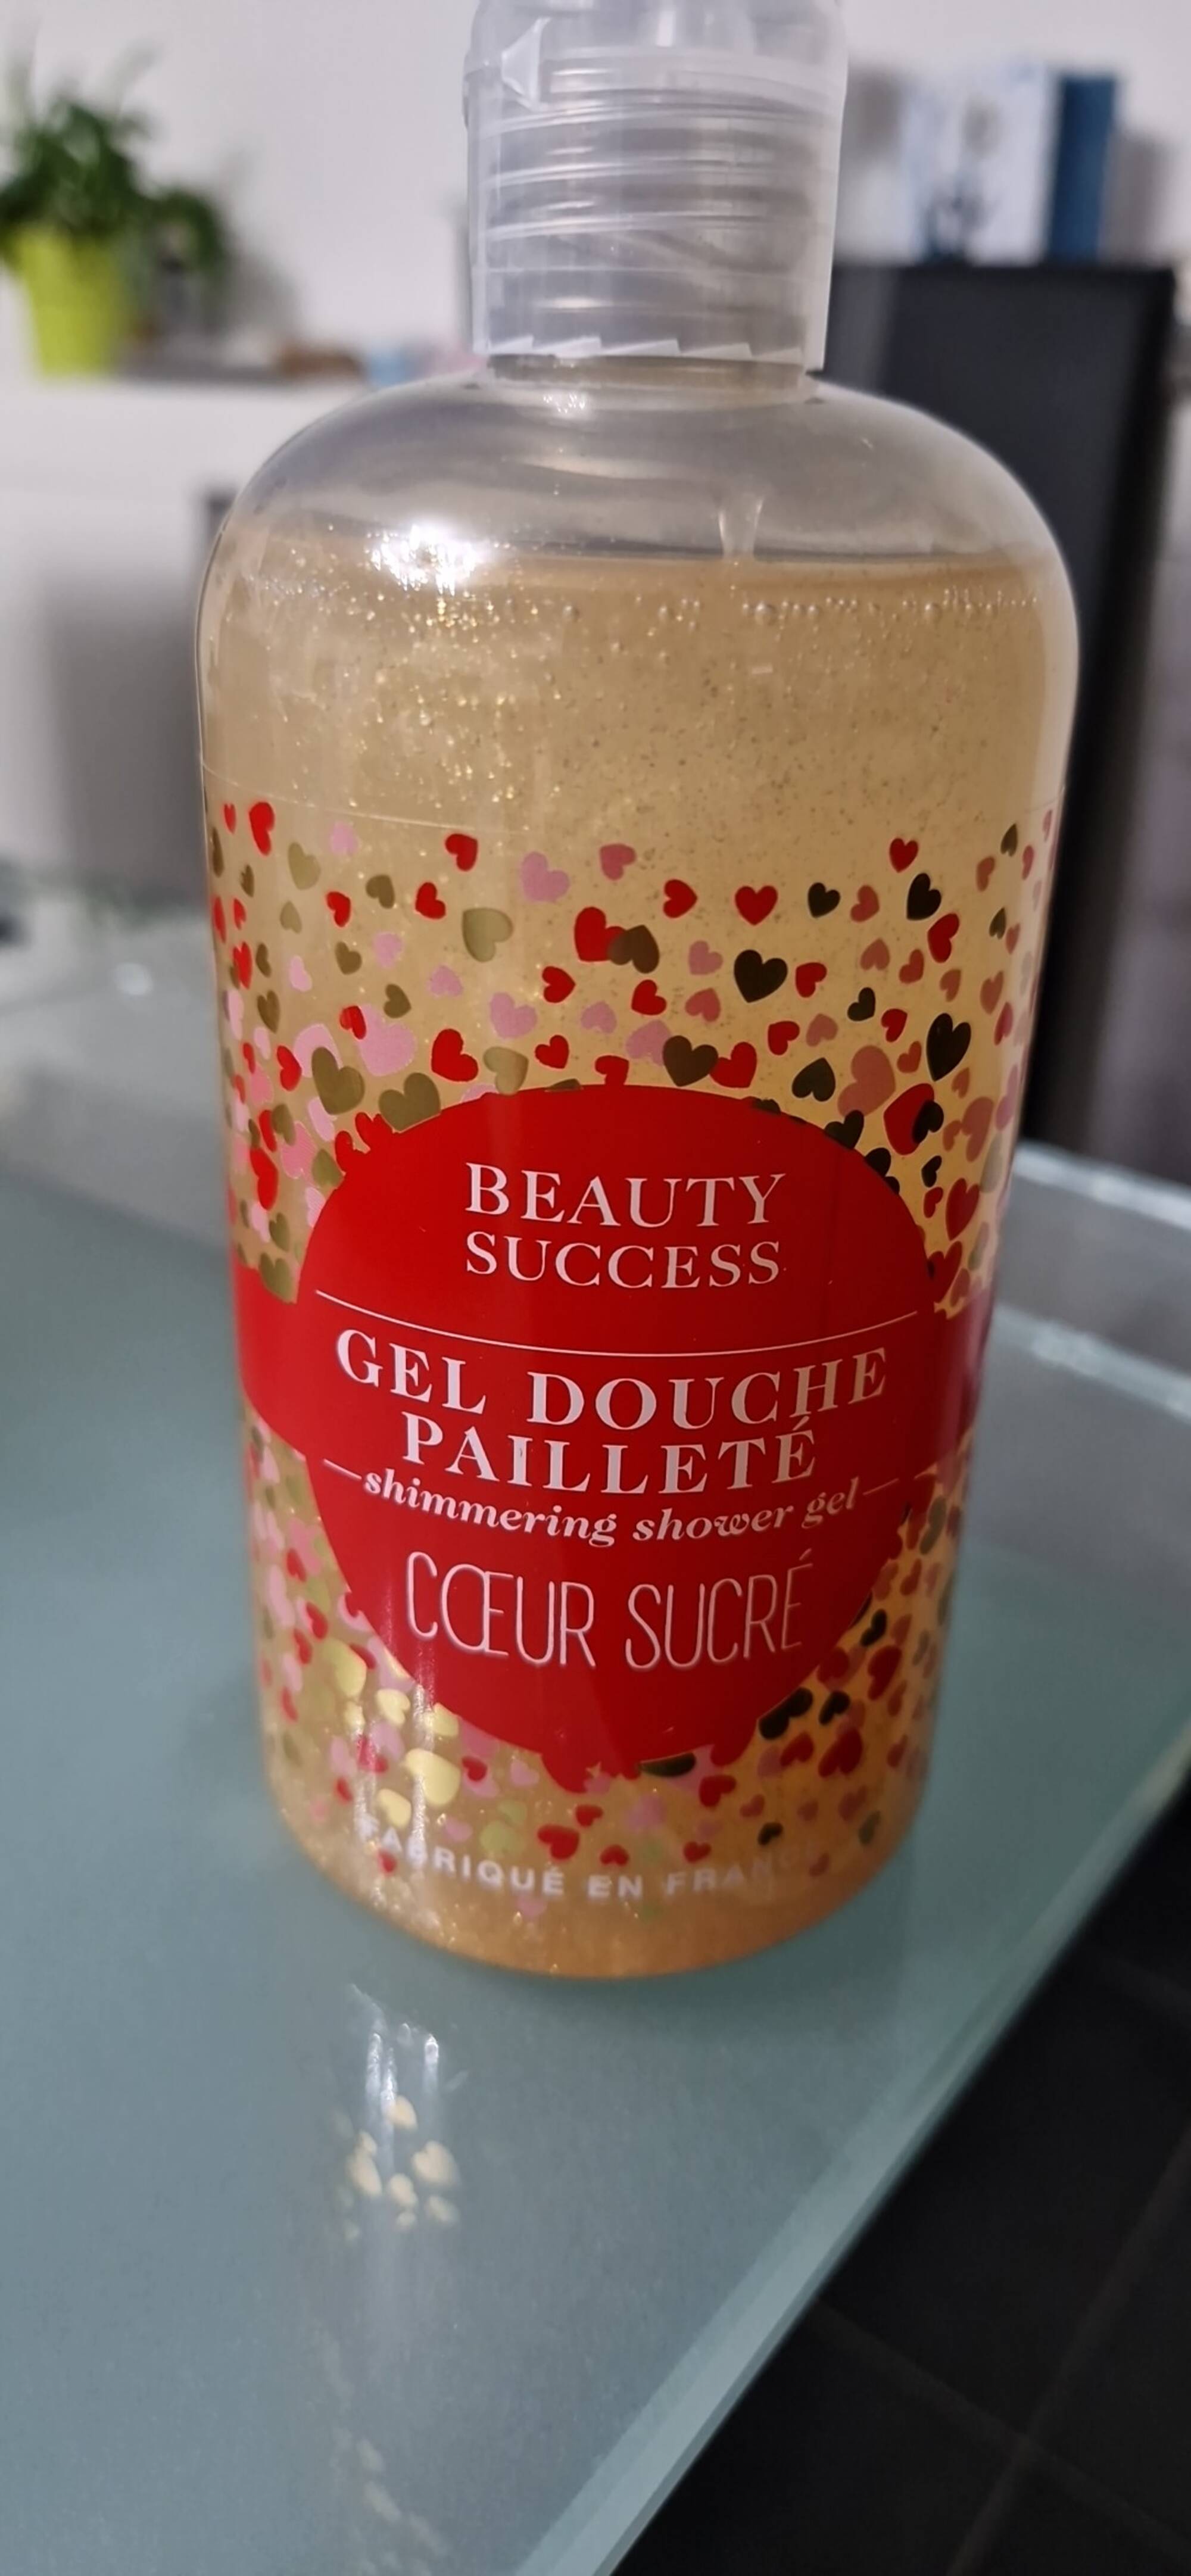 BEAUTY SUCCESS - Cœur sucré - Gel douche pailleté